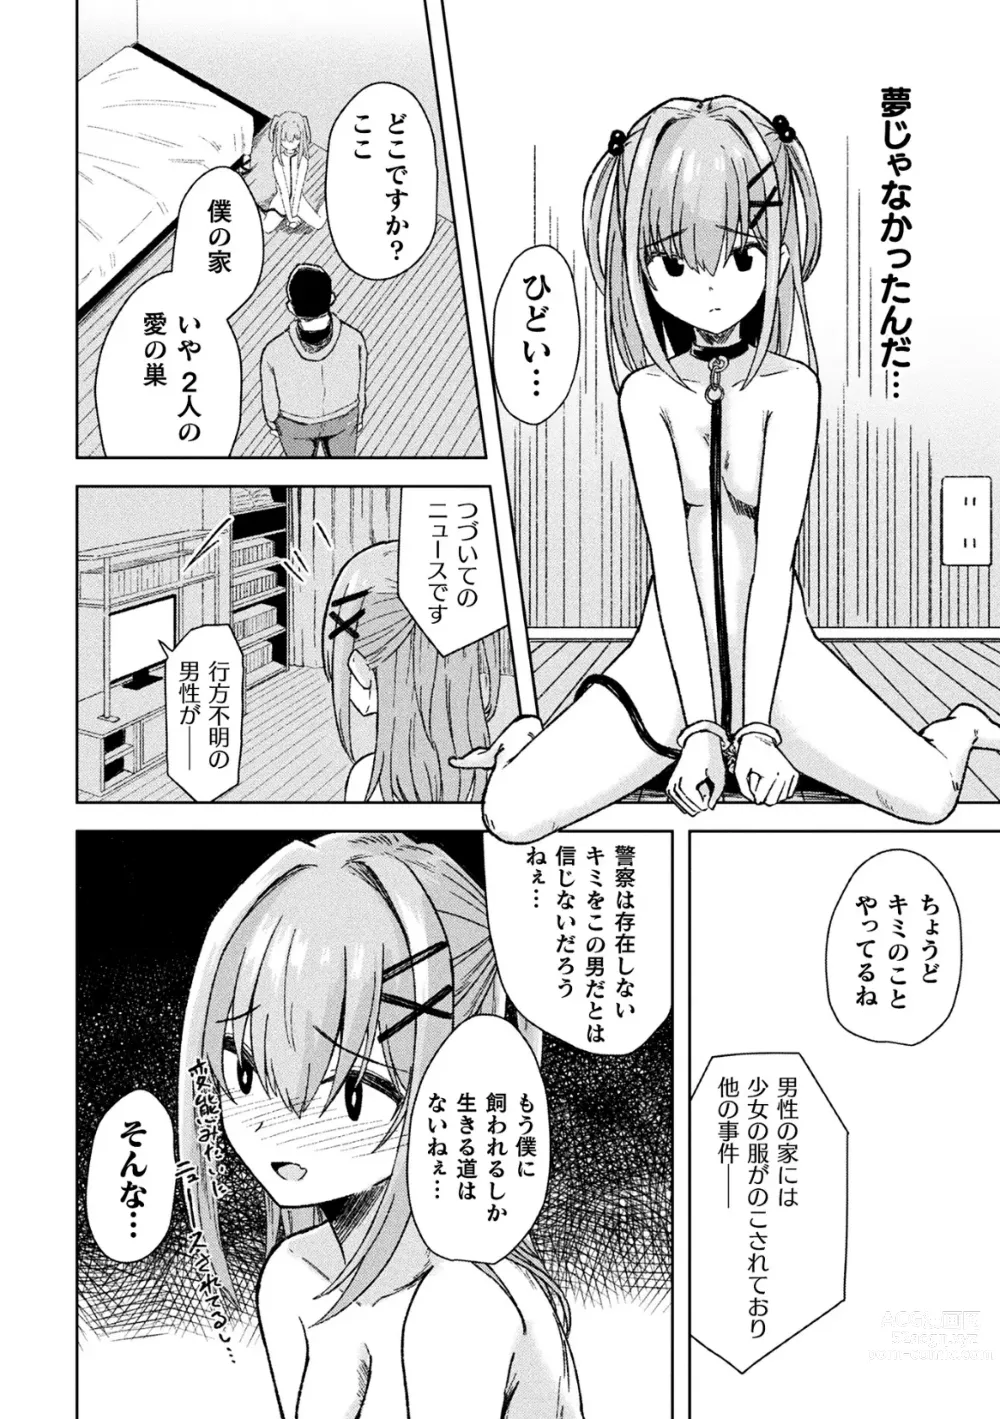 Page 60 of manga 2D Comic Magazine TS Mesugaki Rakushou Jinsei no Hazu ga Wakarase